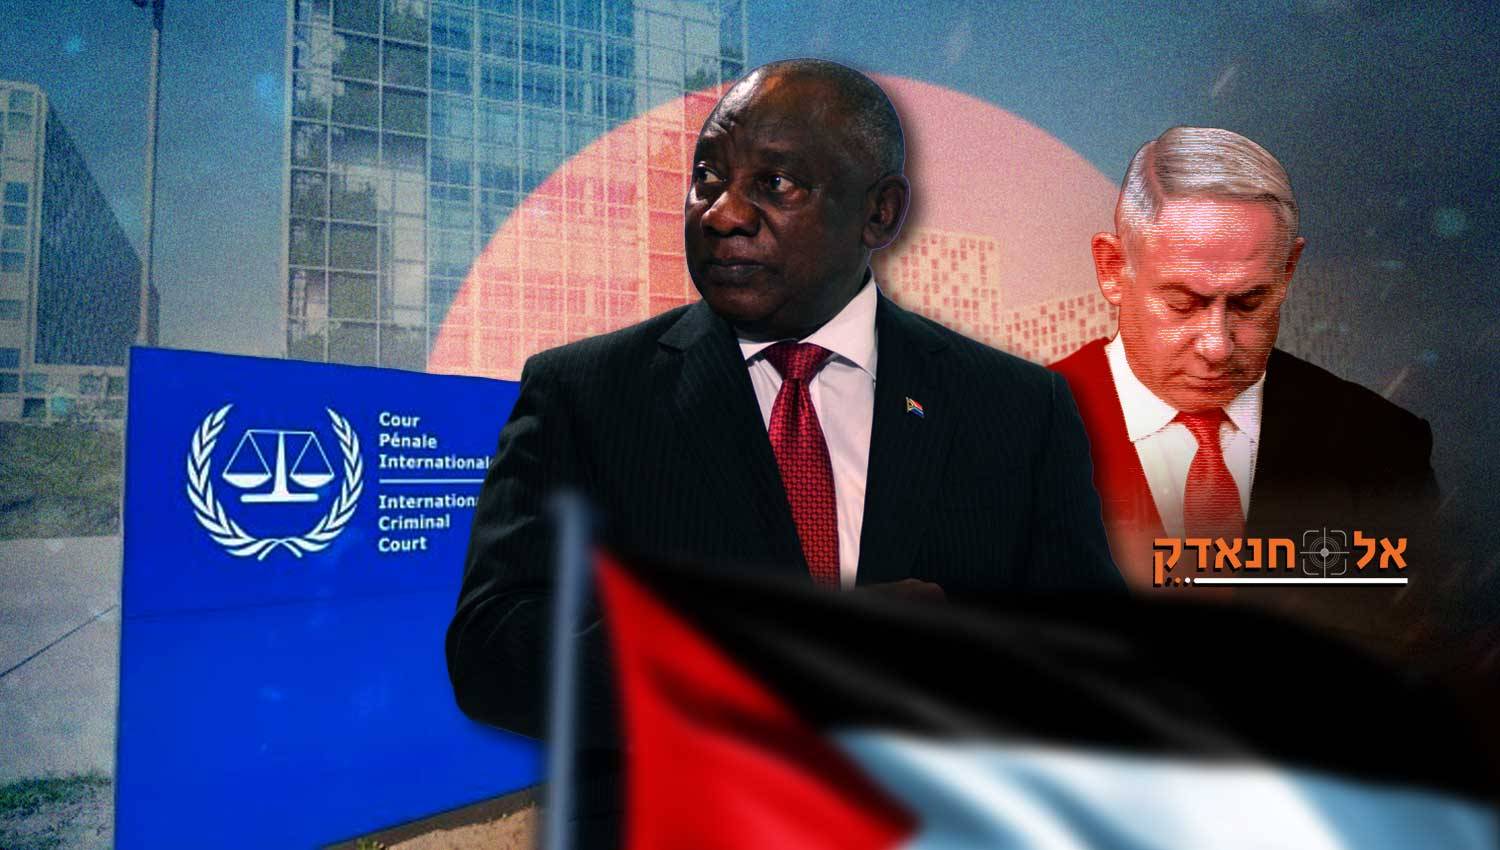 התביעה של דרום אפריקה נגד ישראל: ציפיות והשלכות